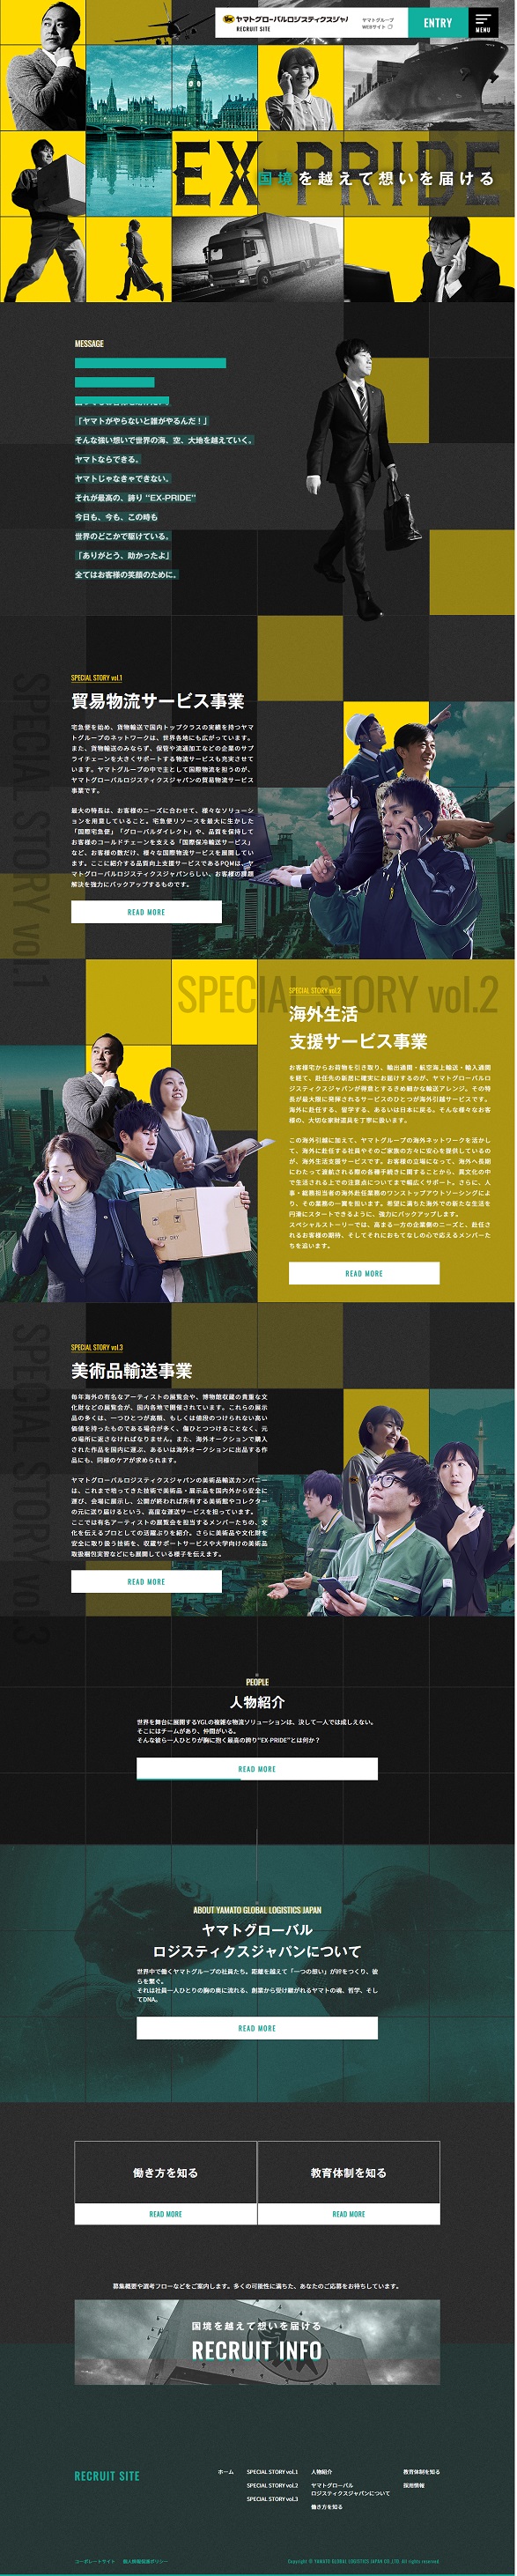 新卒採用サイト | ヤマトグローバルロジスティクスジャパン